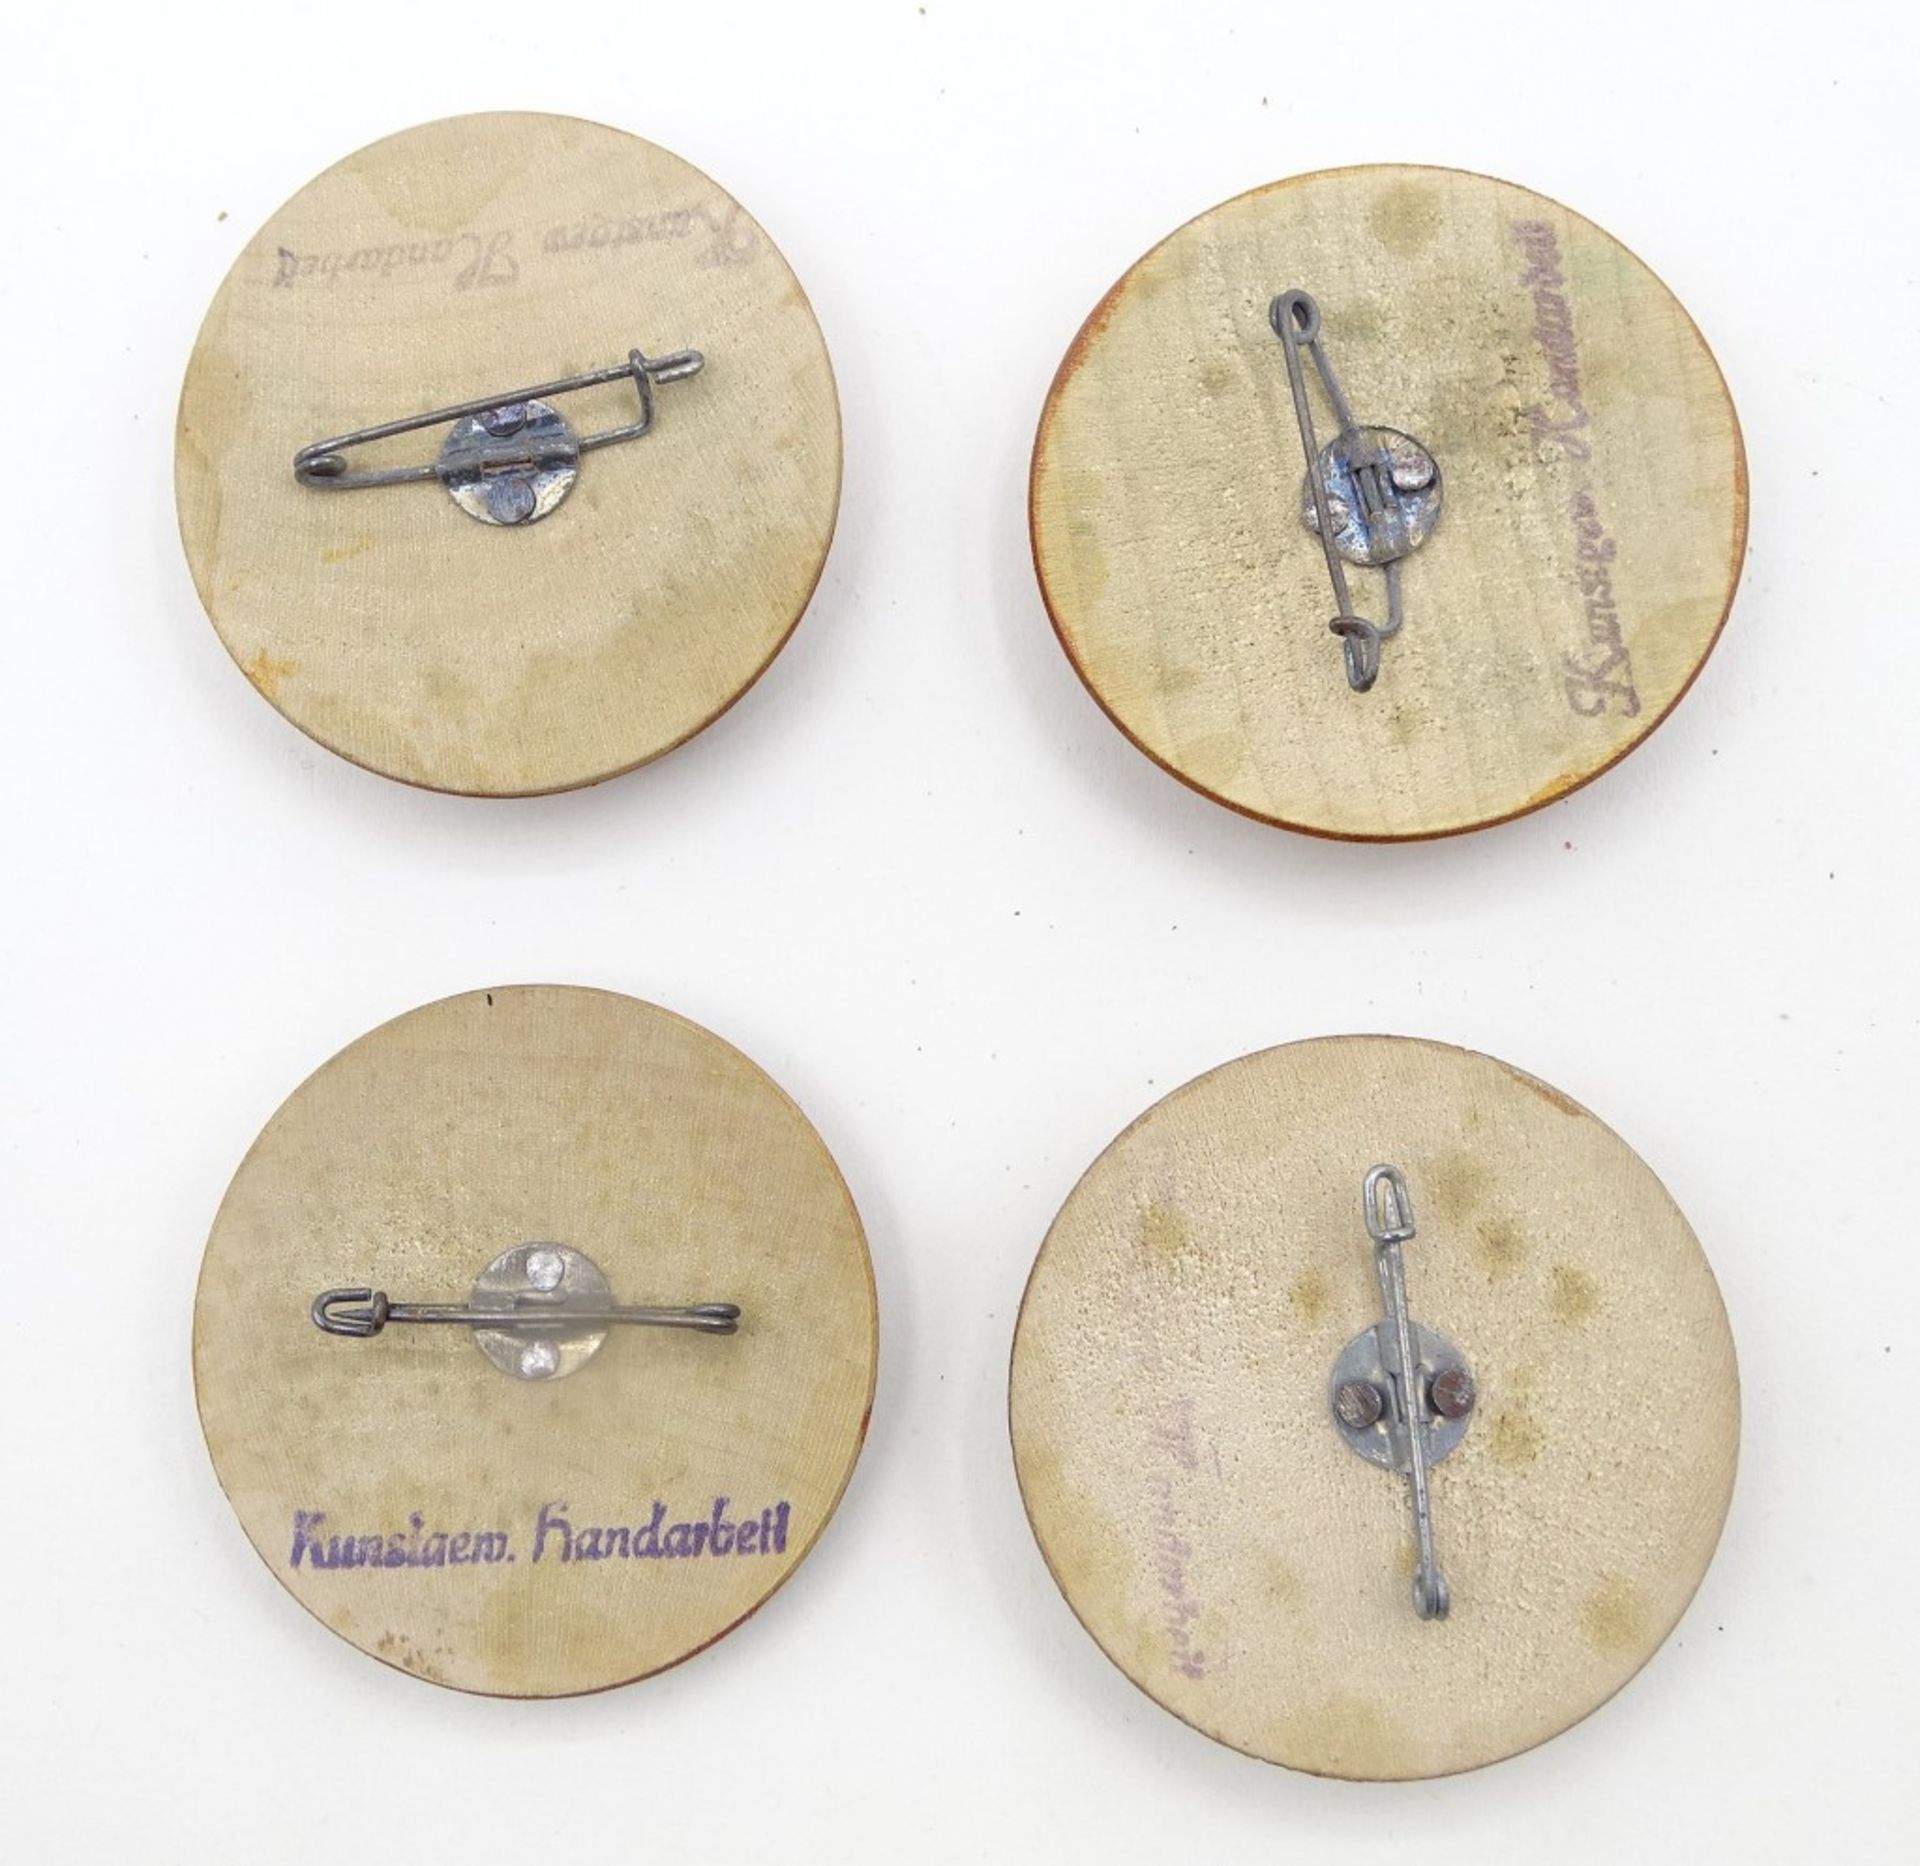 4 alte bemalte Holzbroschen, Handarbeit, 4,3 cm, mit Altersspuren, Bemalung verblasst, abgerieben - Image 4 of 4